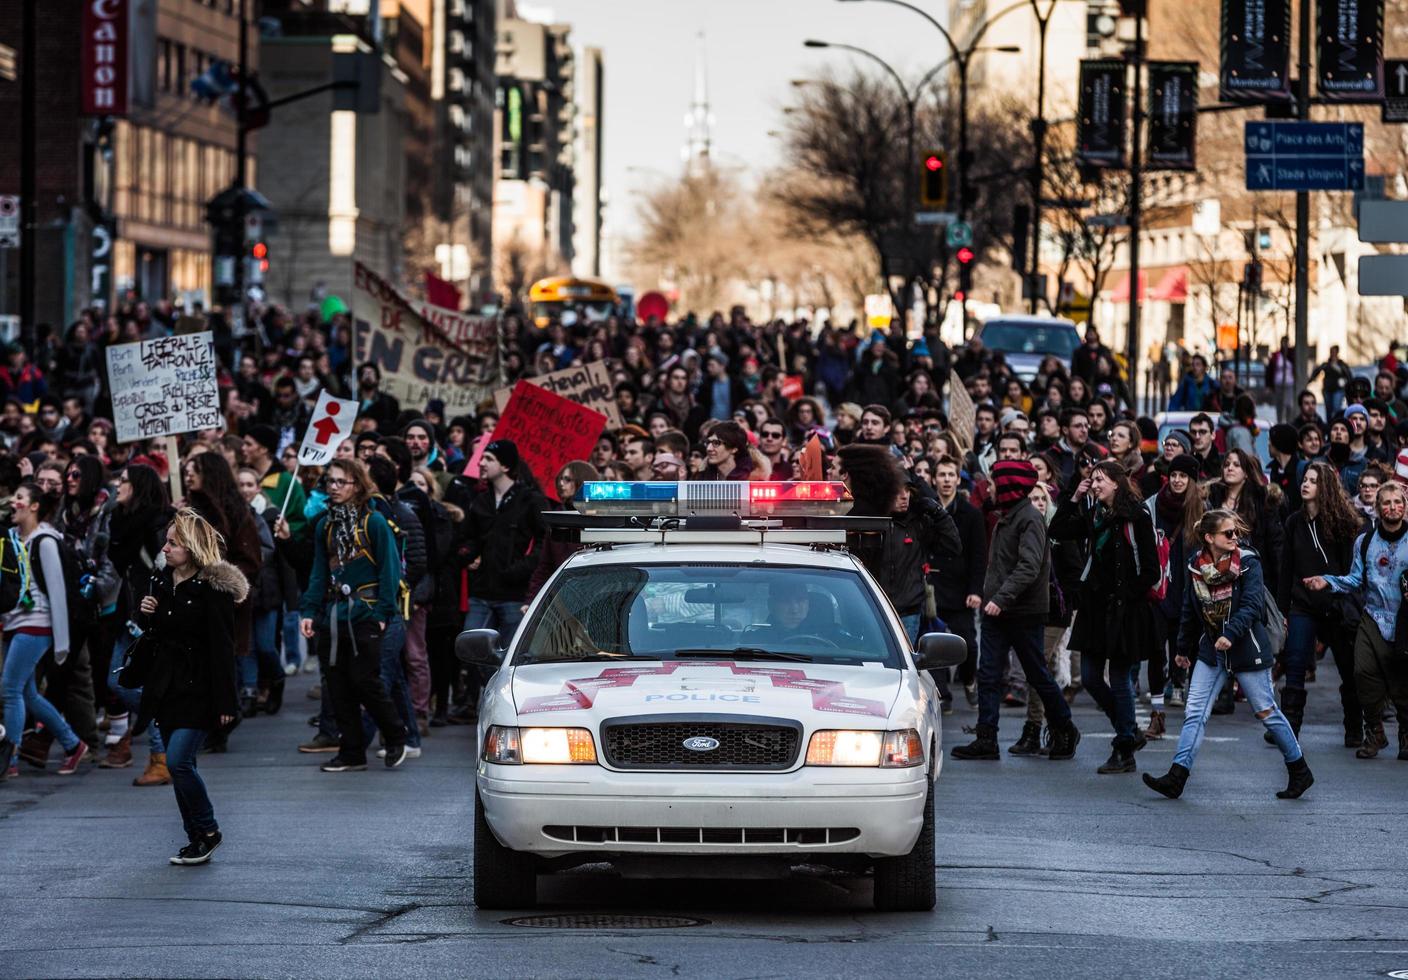 montreal, canadá, 2 de abril de 2015 - carro da polícia na frente dos manifestantes controlando o tráfego foto